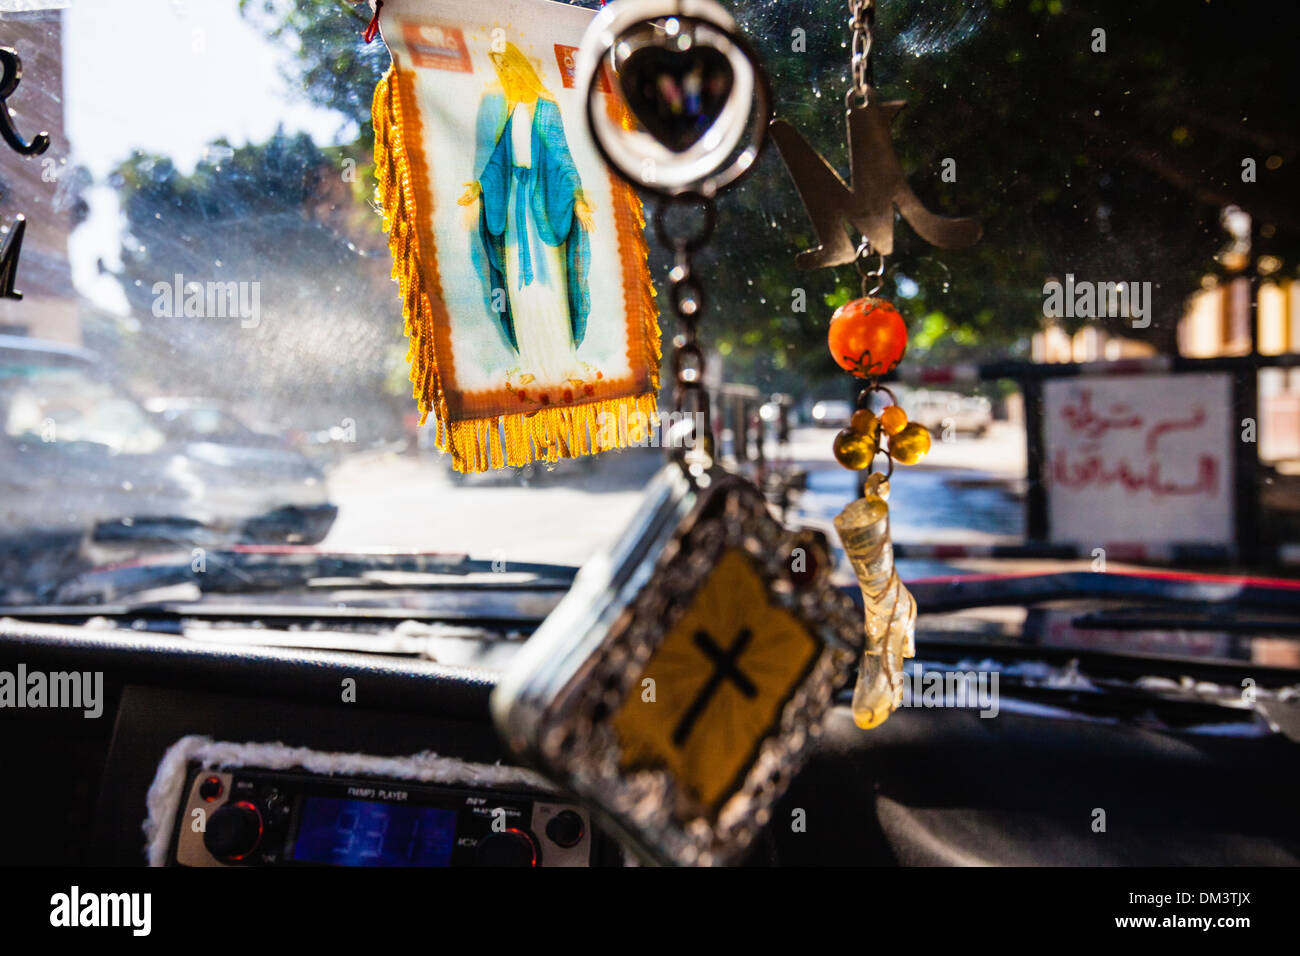 Vierge Marie et d'autres parures chrétienne sur la voiture d'un chauffeur de taxi Copte égyptienne. Sohag, Egypte Banque D'Images